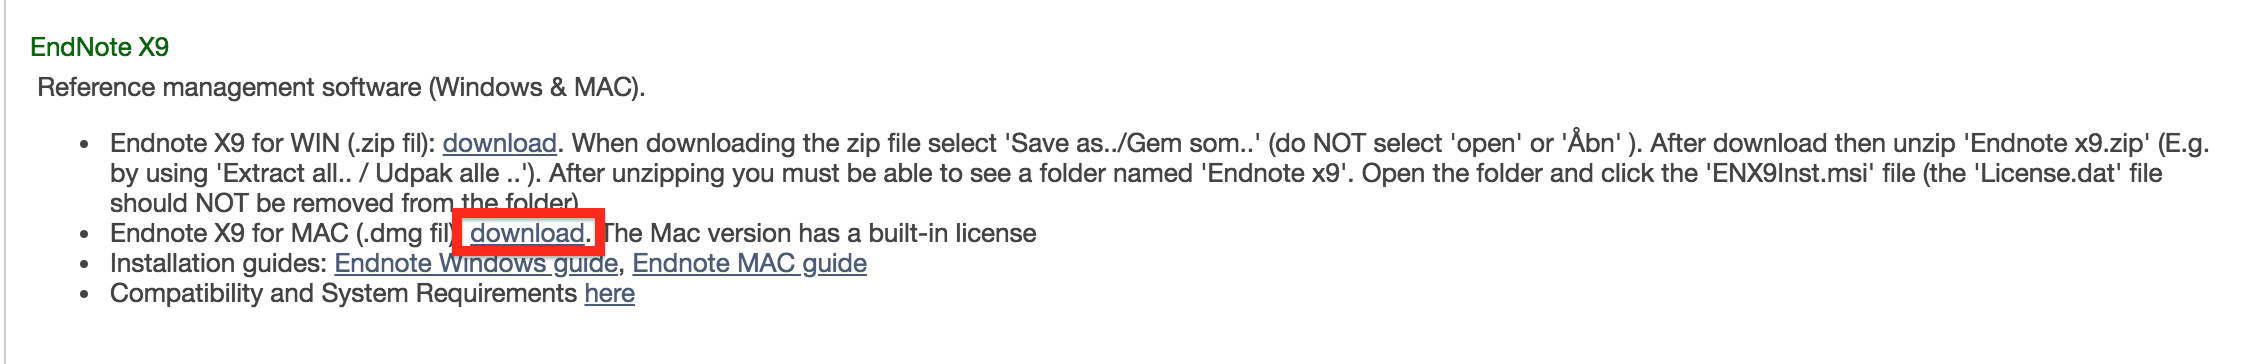 endnote web undo deleted files